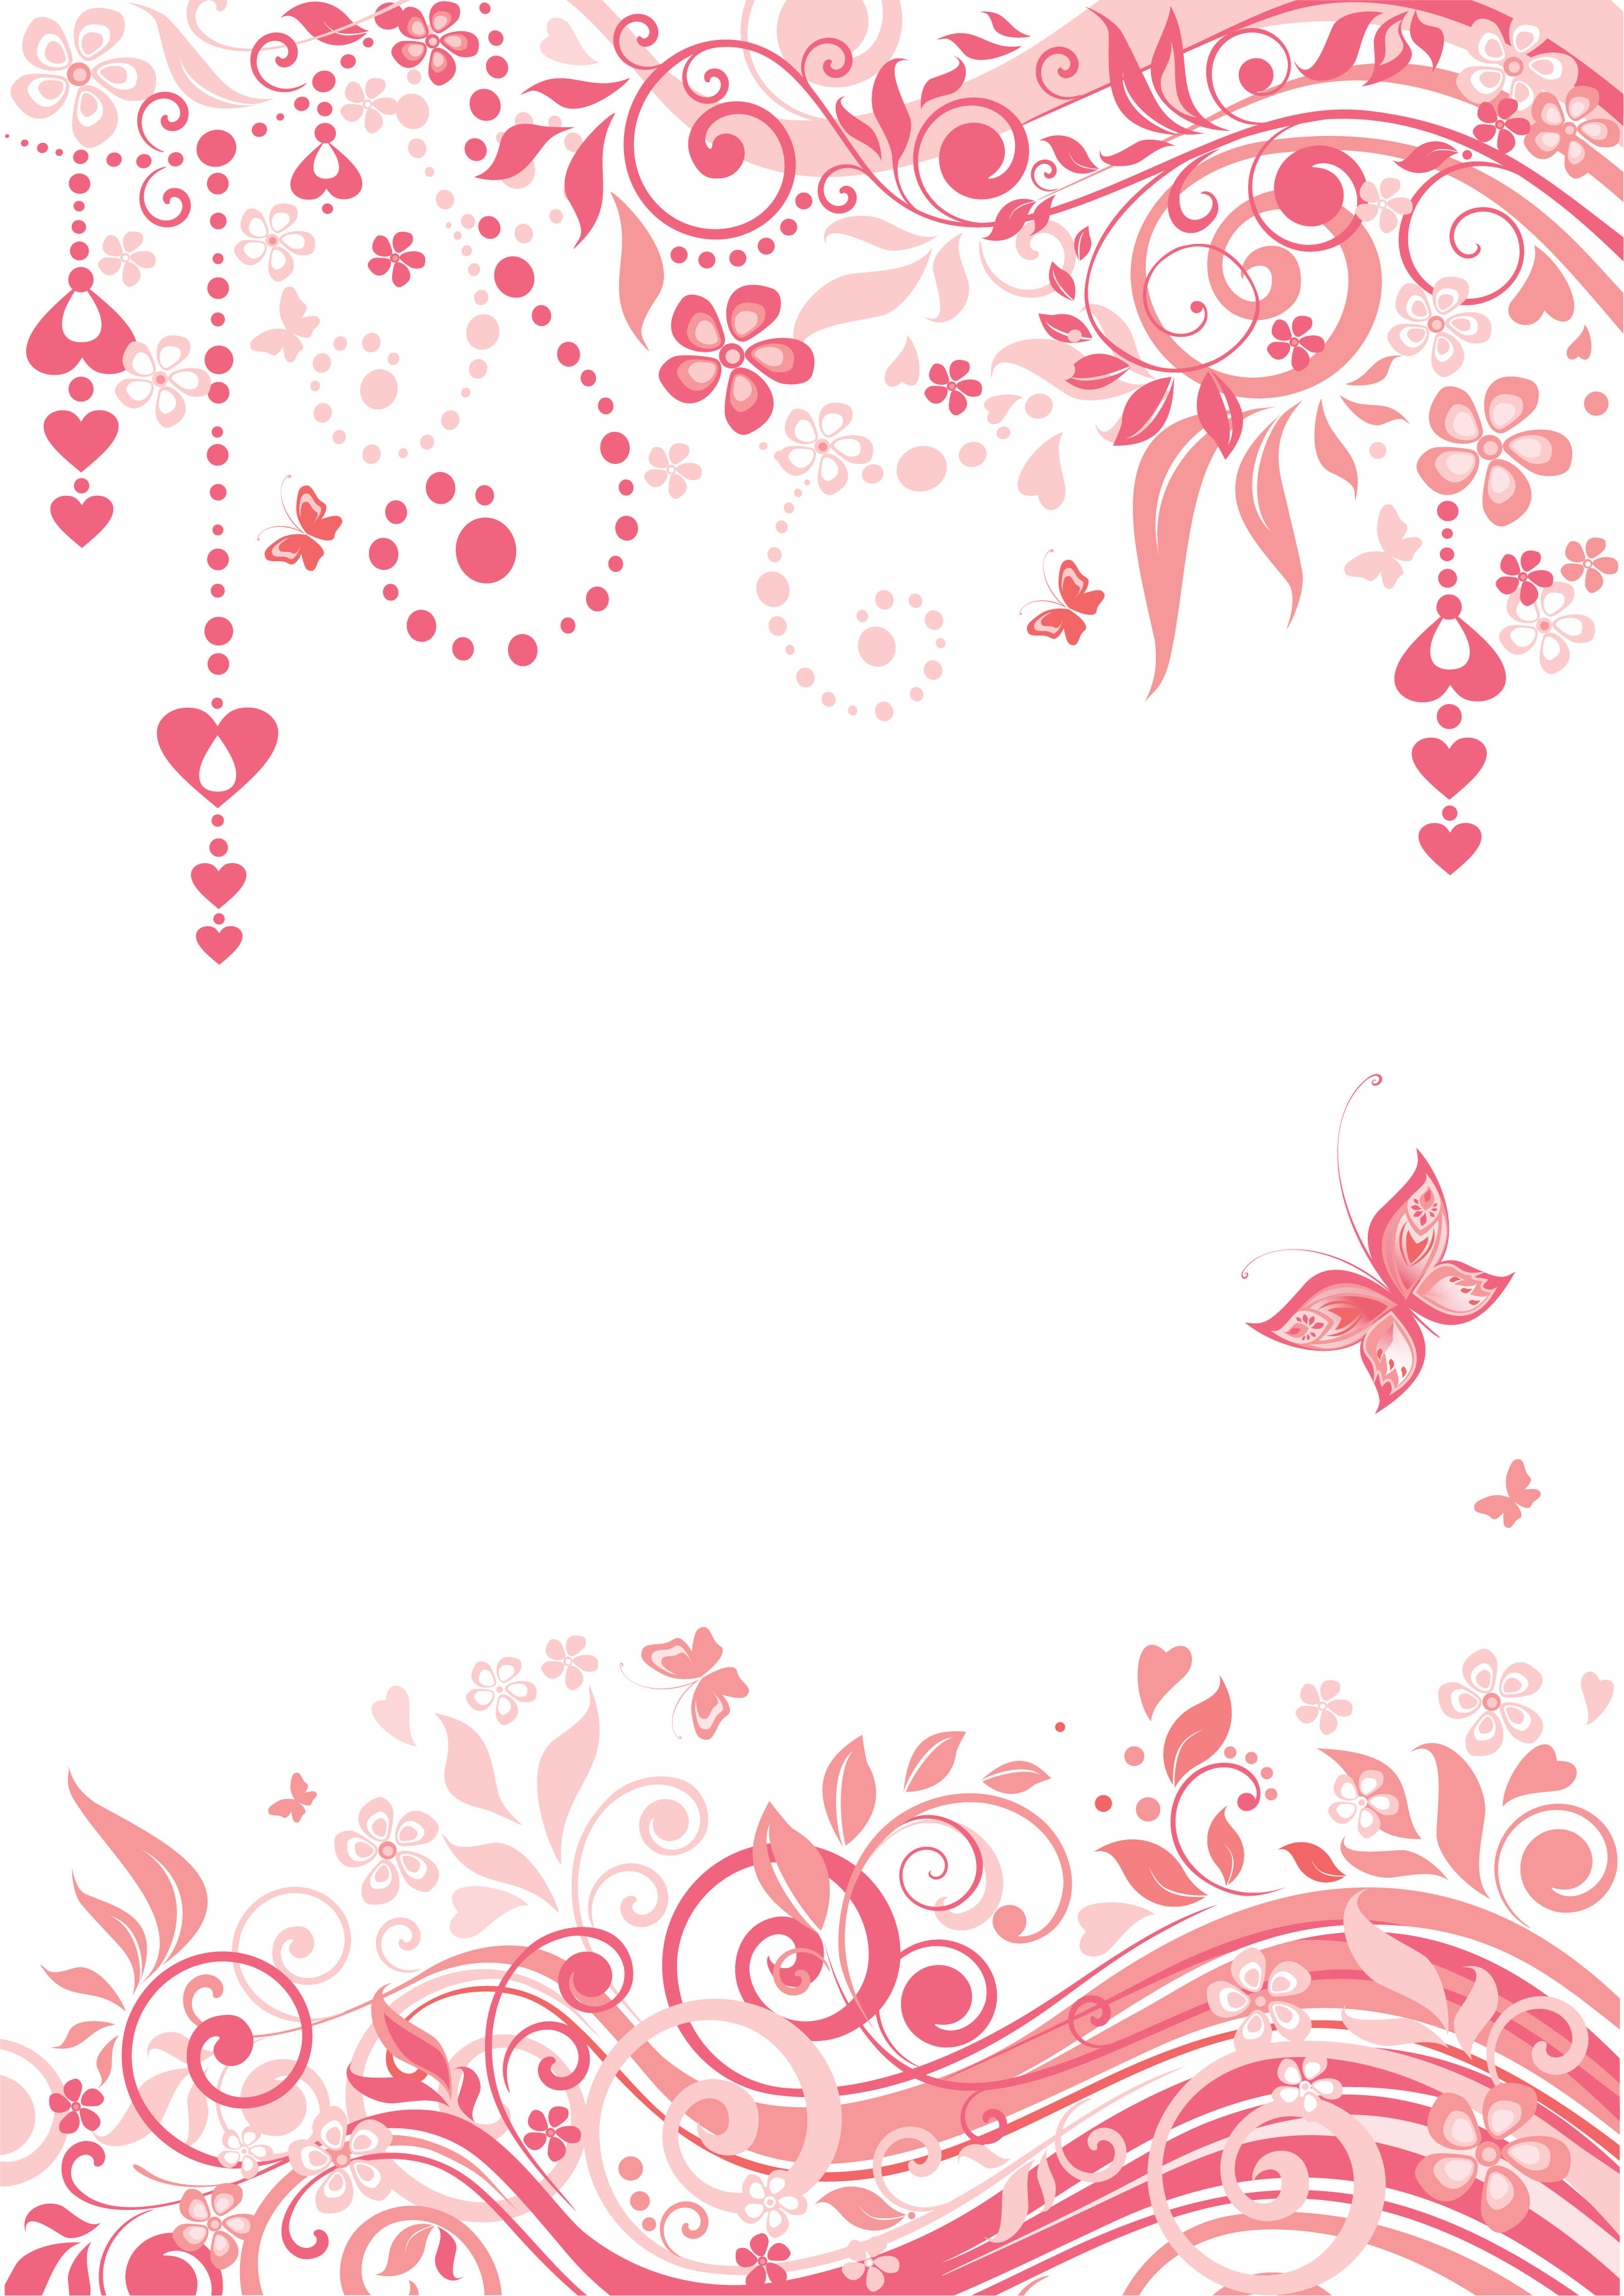 花のイラスト フリー素材 壁紙 背景no 841 赤 ピンク ハート 蝶